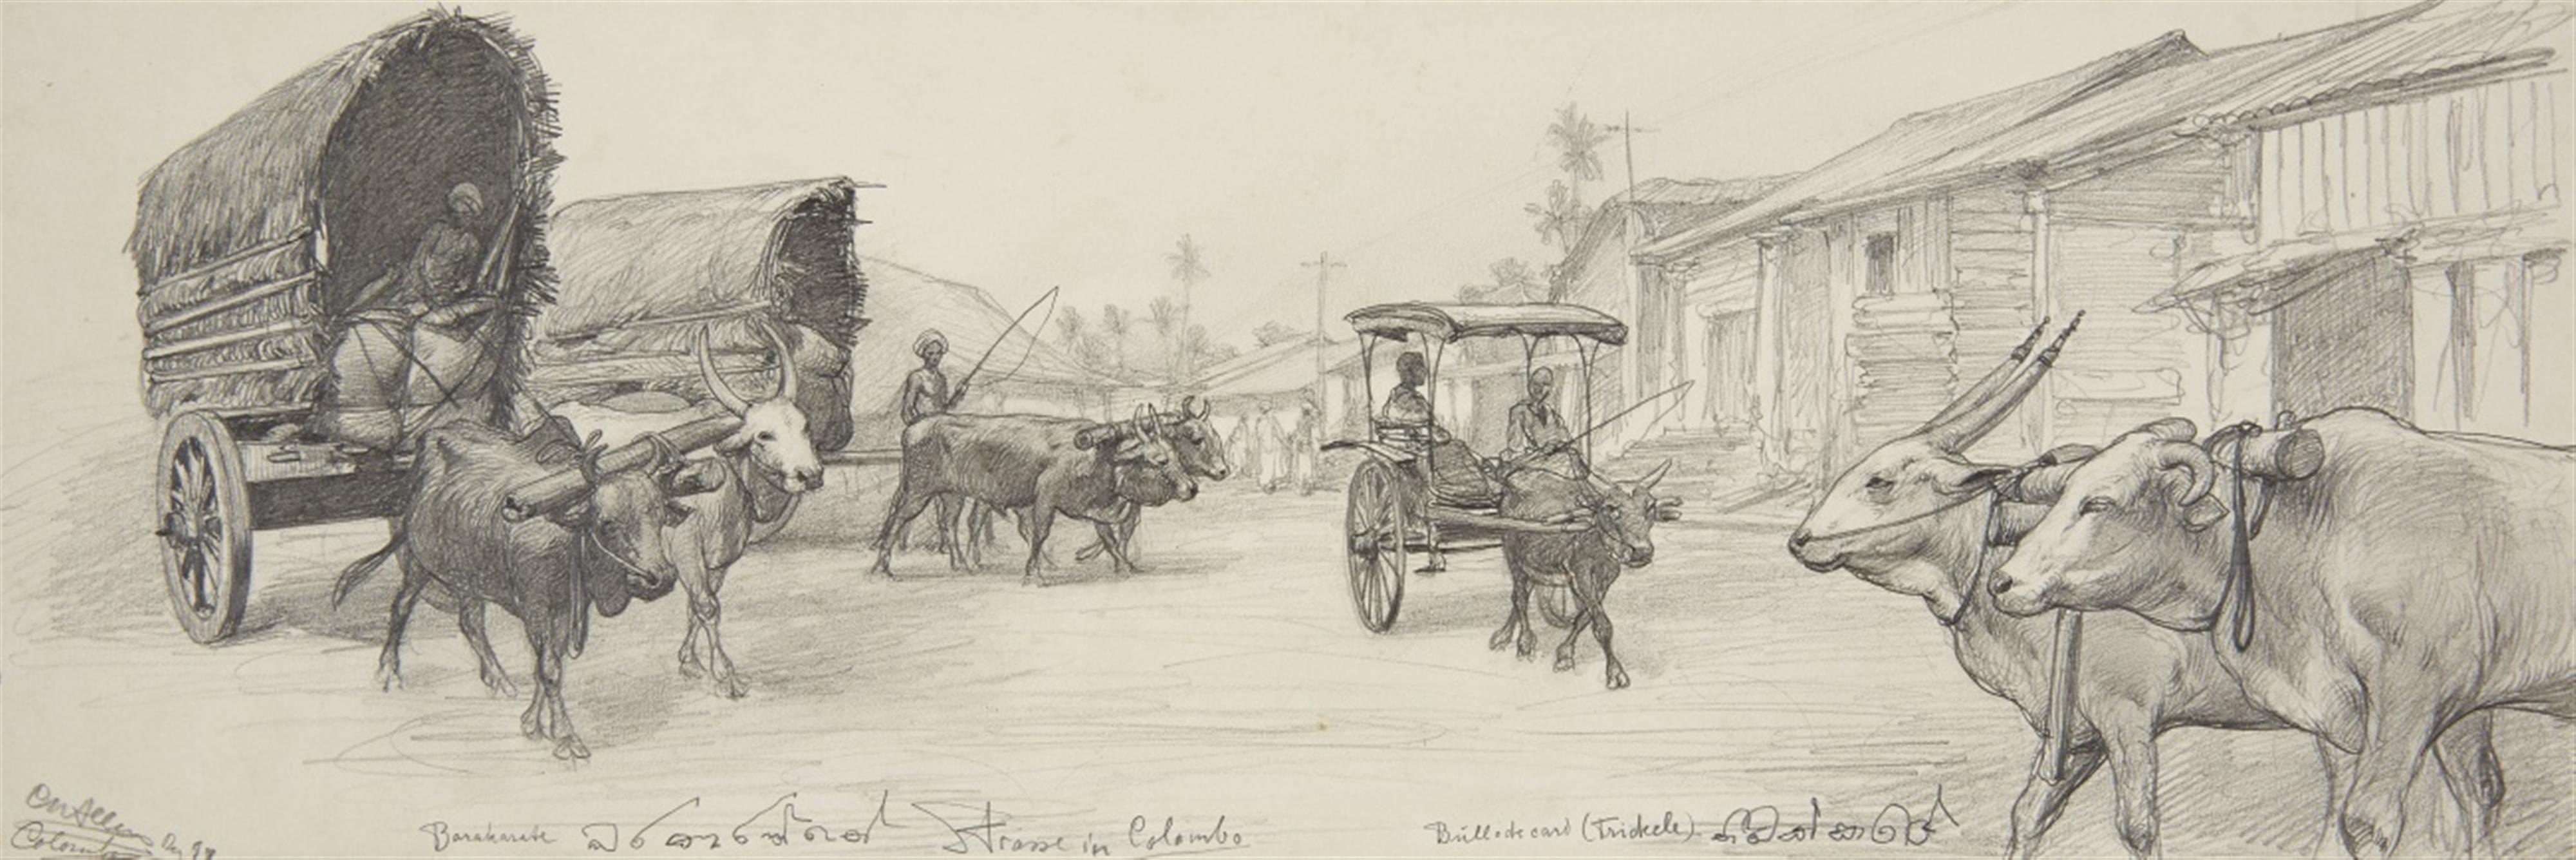 Unbekannter Künstler des 19. Jahrhunderts - Strasse in Colombo, Ceylon - image-1